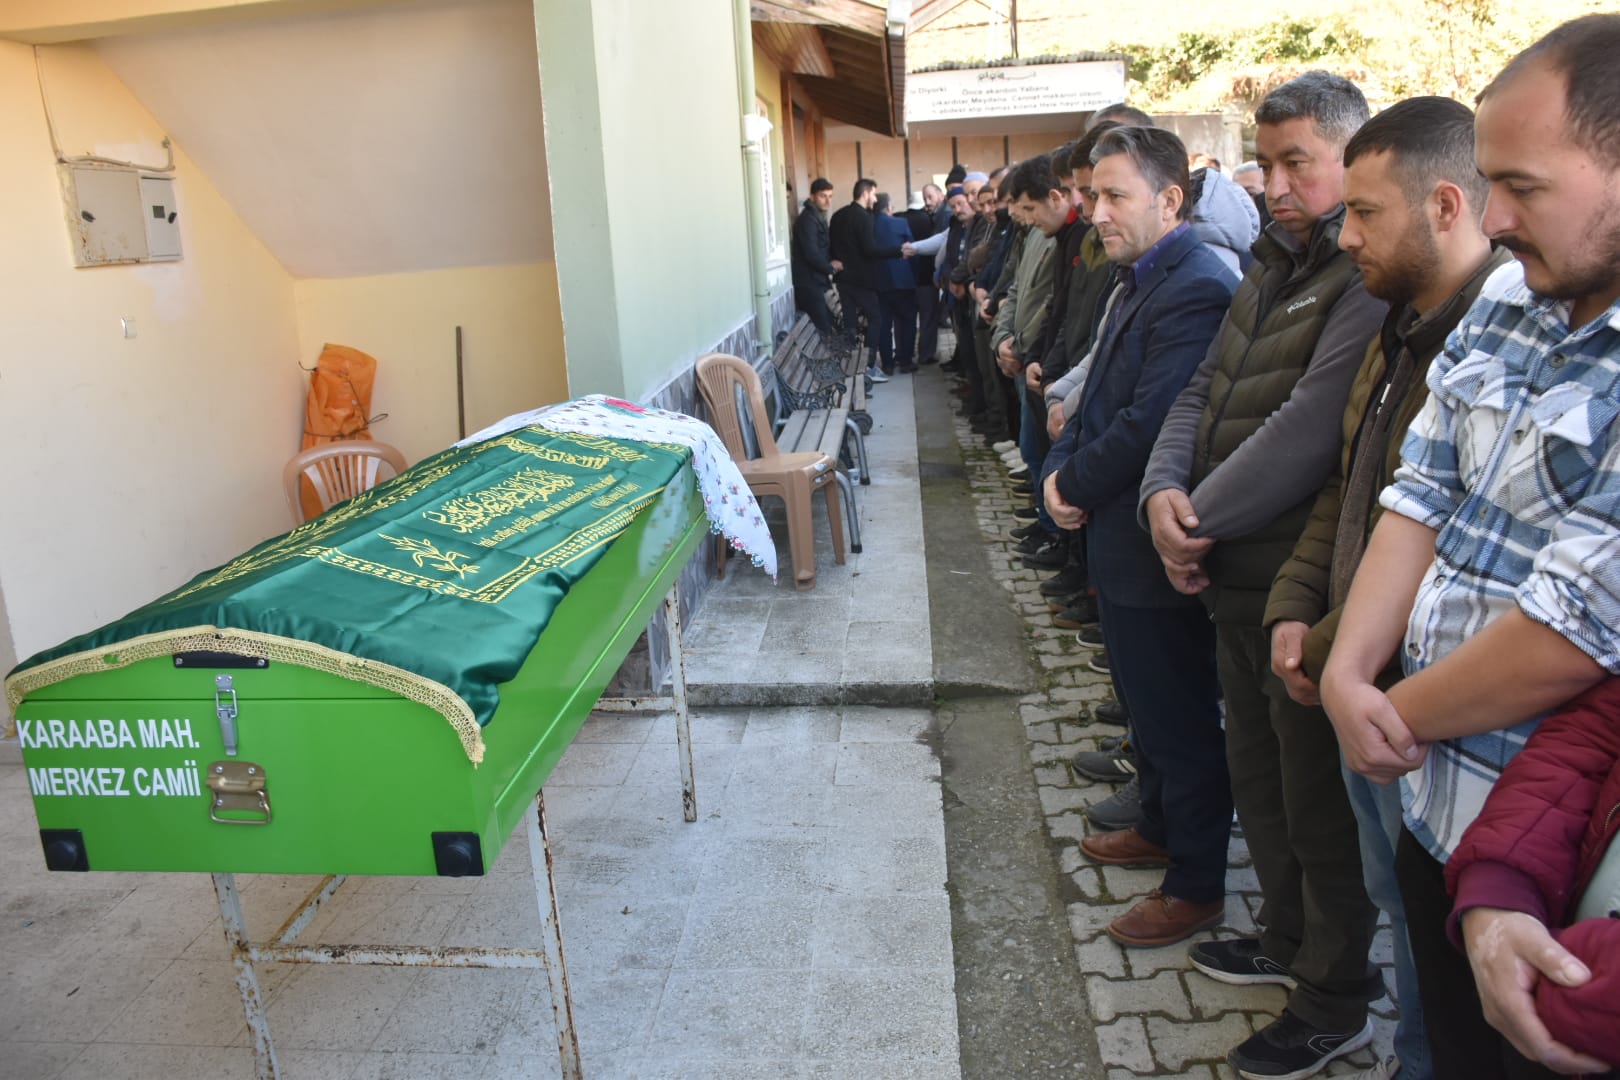 Belediye Başkanımız Hüseyin Kıyma Karaaba Mahallemiz halkından vefat eden Ayşe Akça’nın cenaze namazına katılarak ailesine ve yakınlarına başsağlığında bulundu.